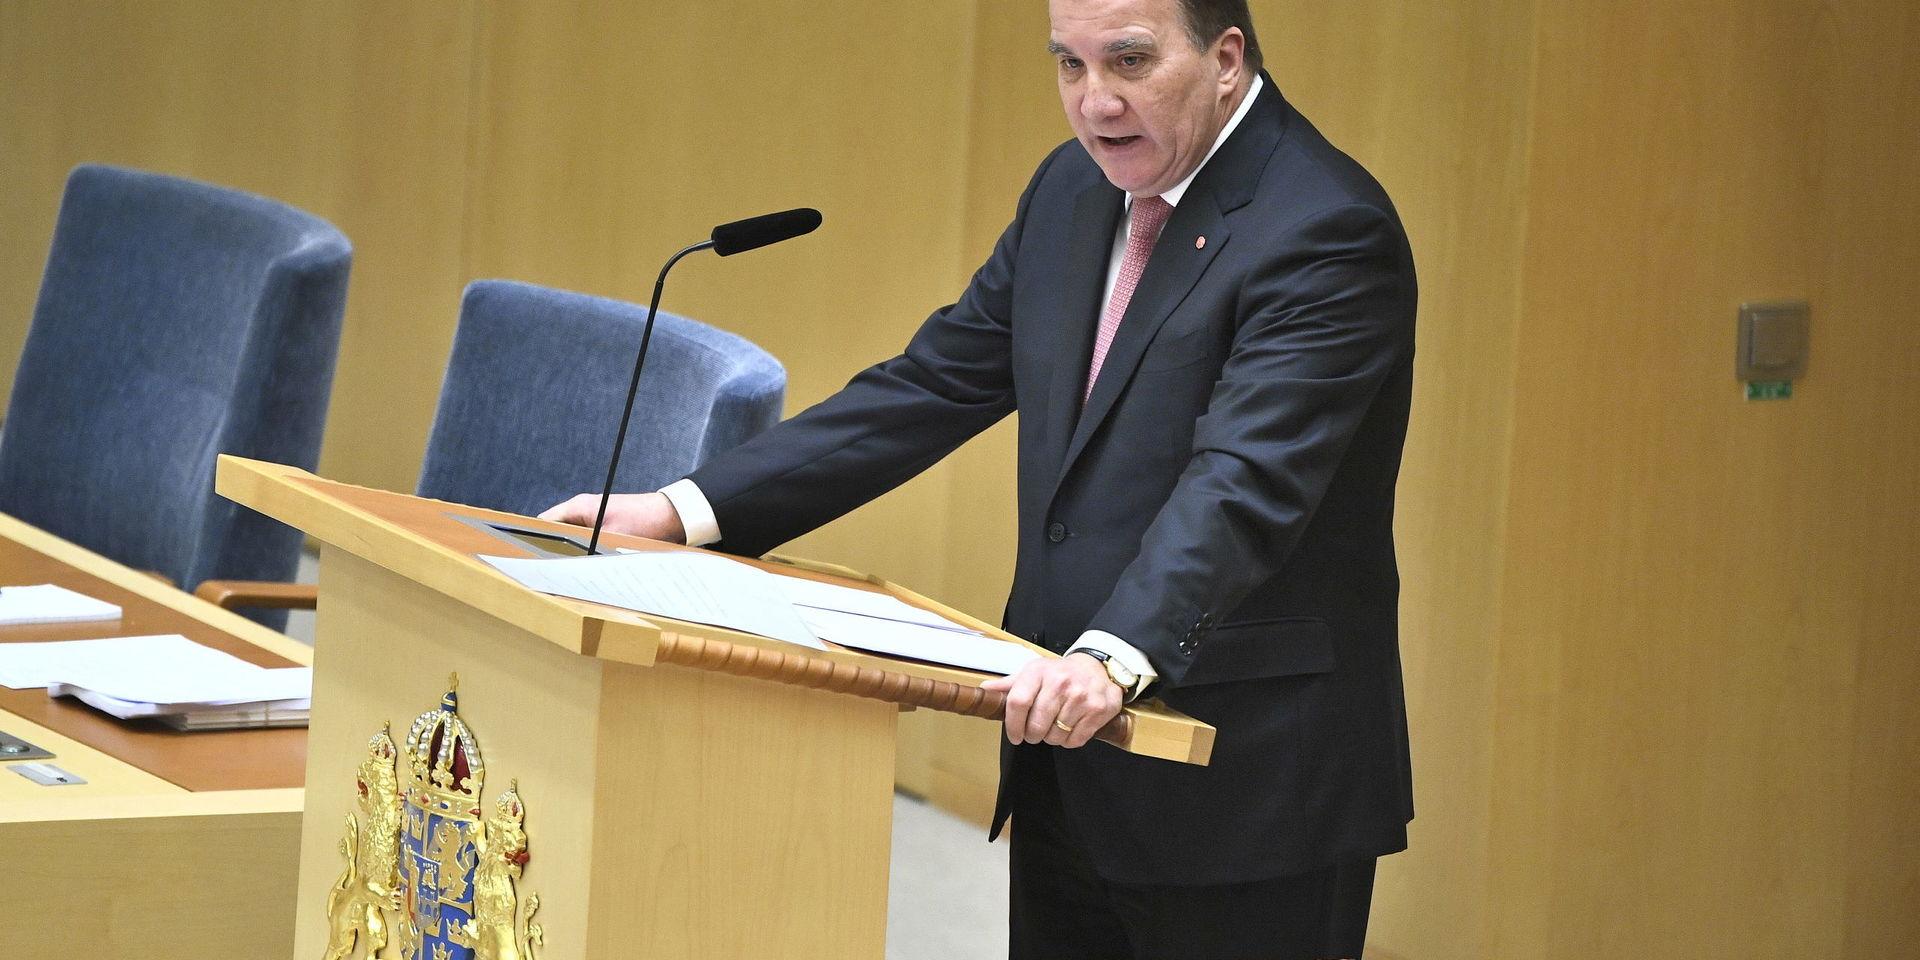 Statsminister Stefan Löfven (S) under den EU-politiska partiledardebatten i riksdagshuset.